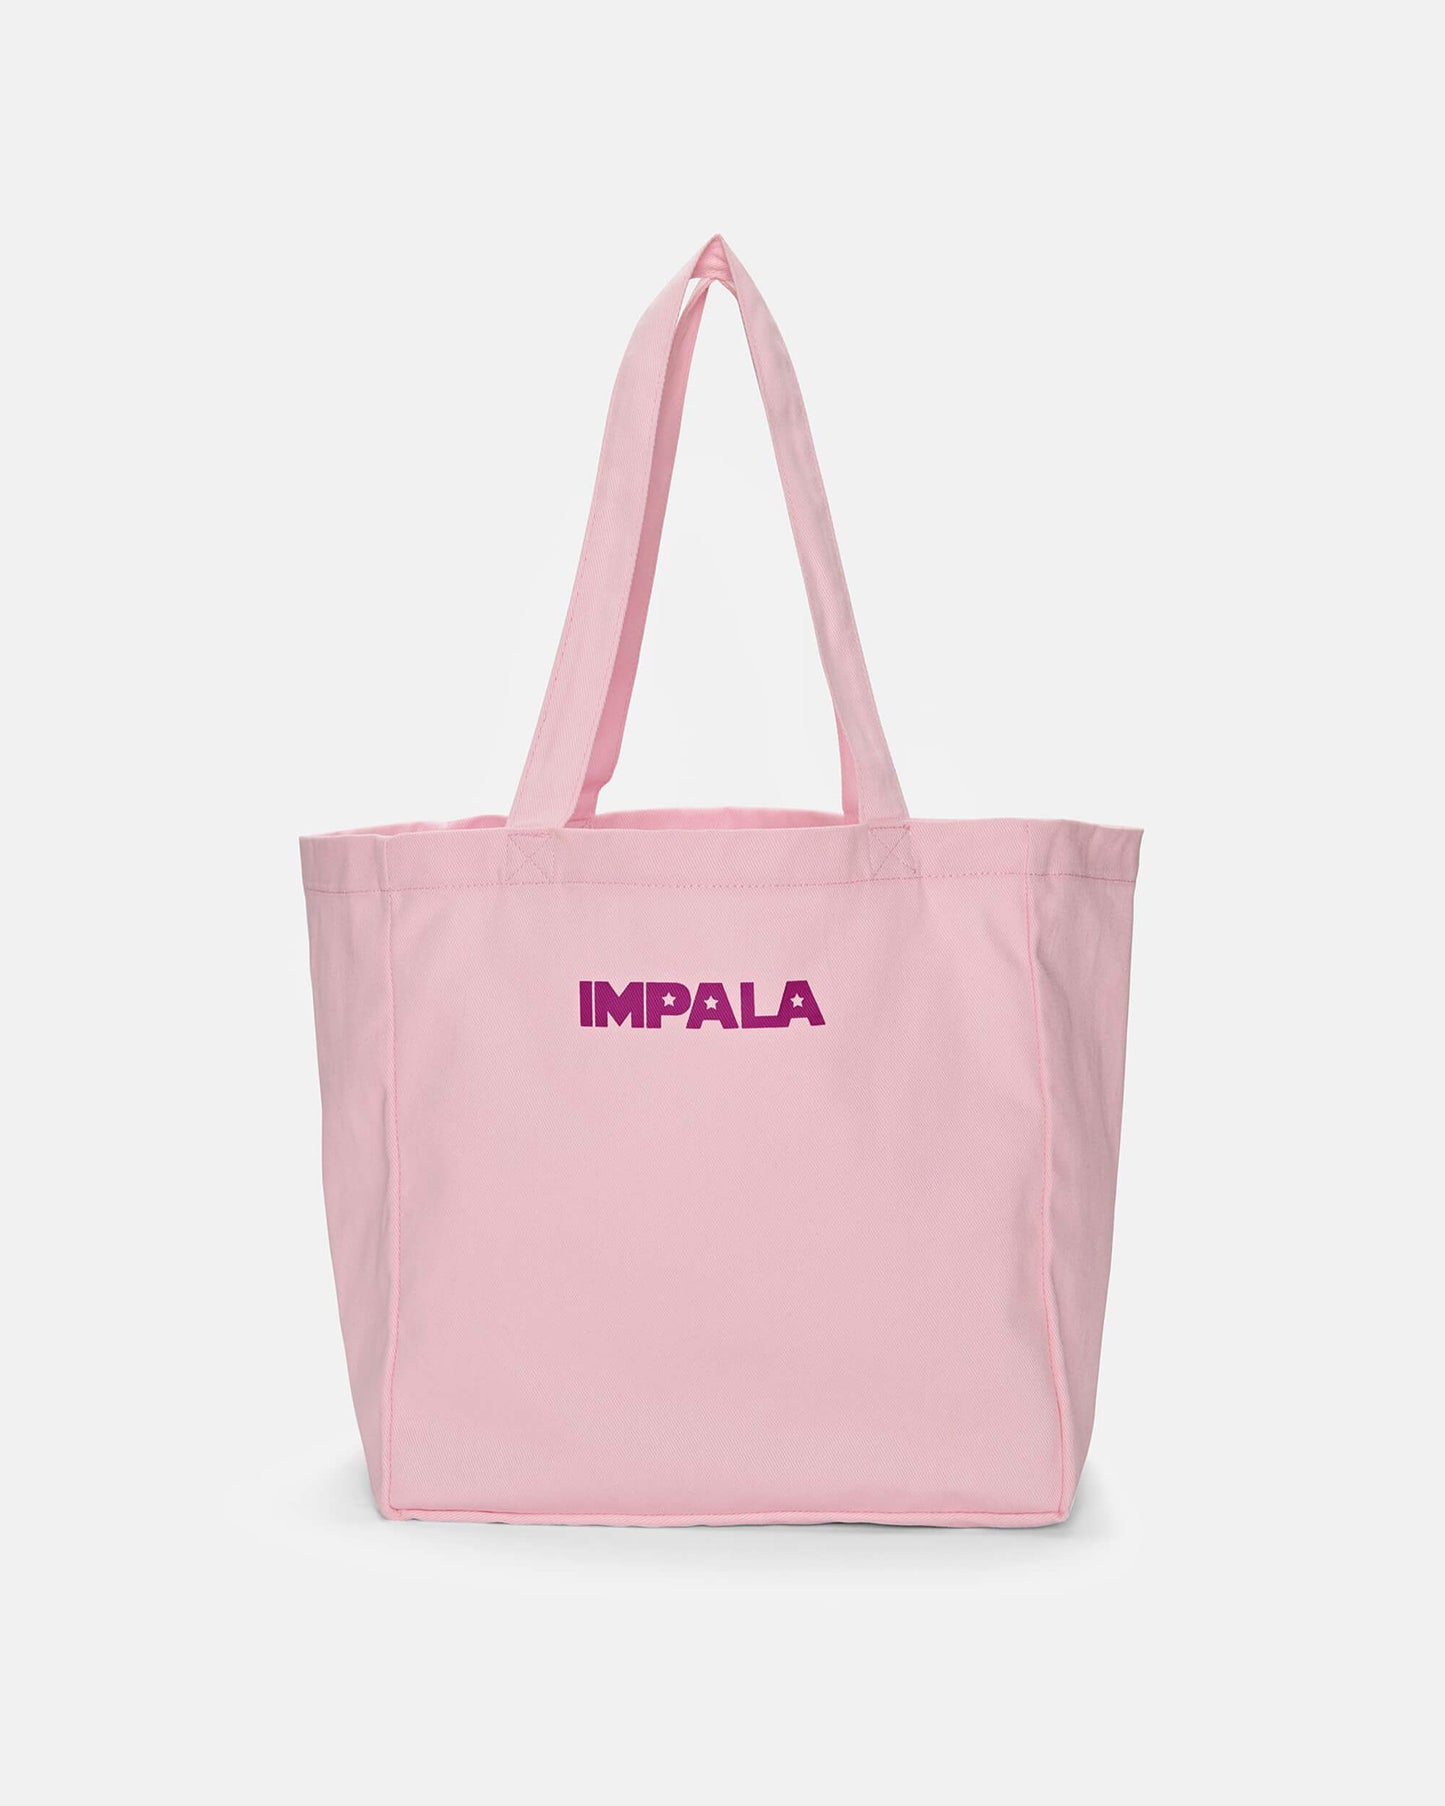 Impala Tote Bag